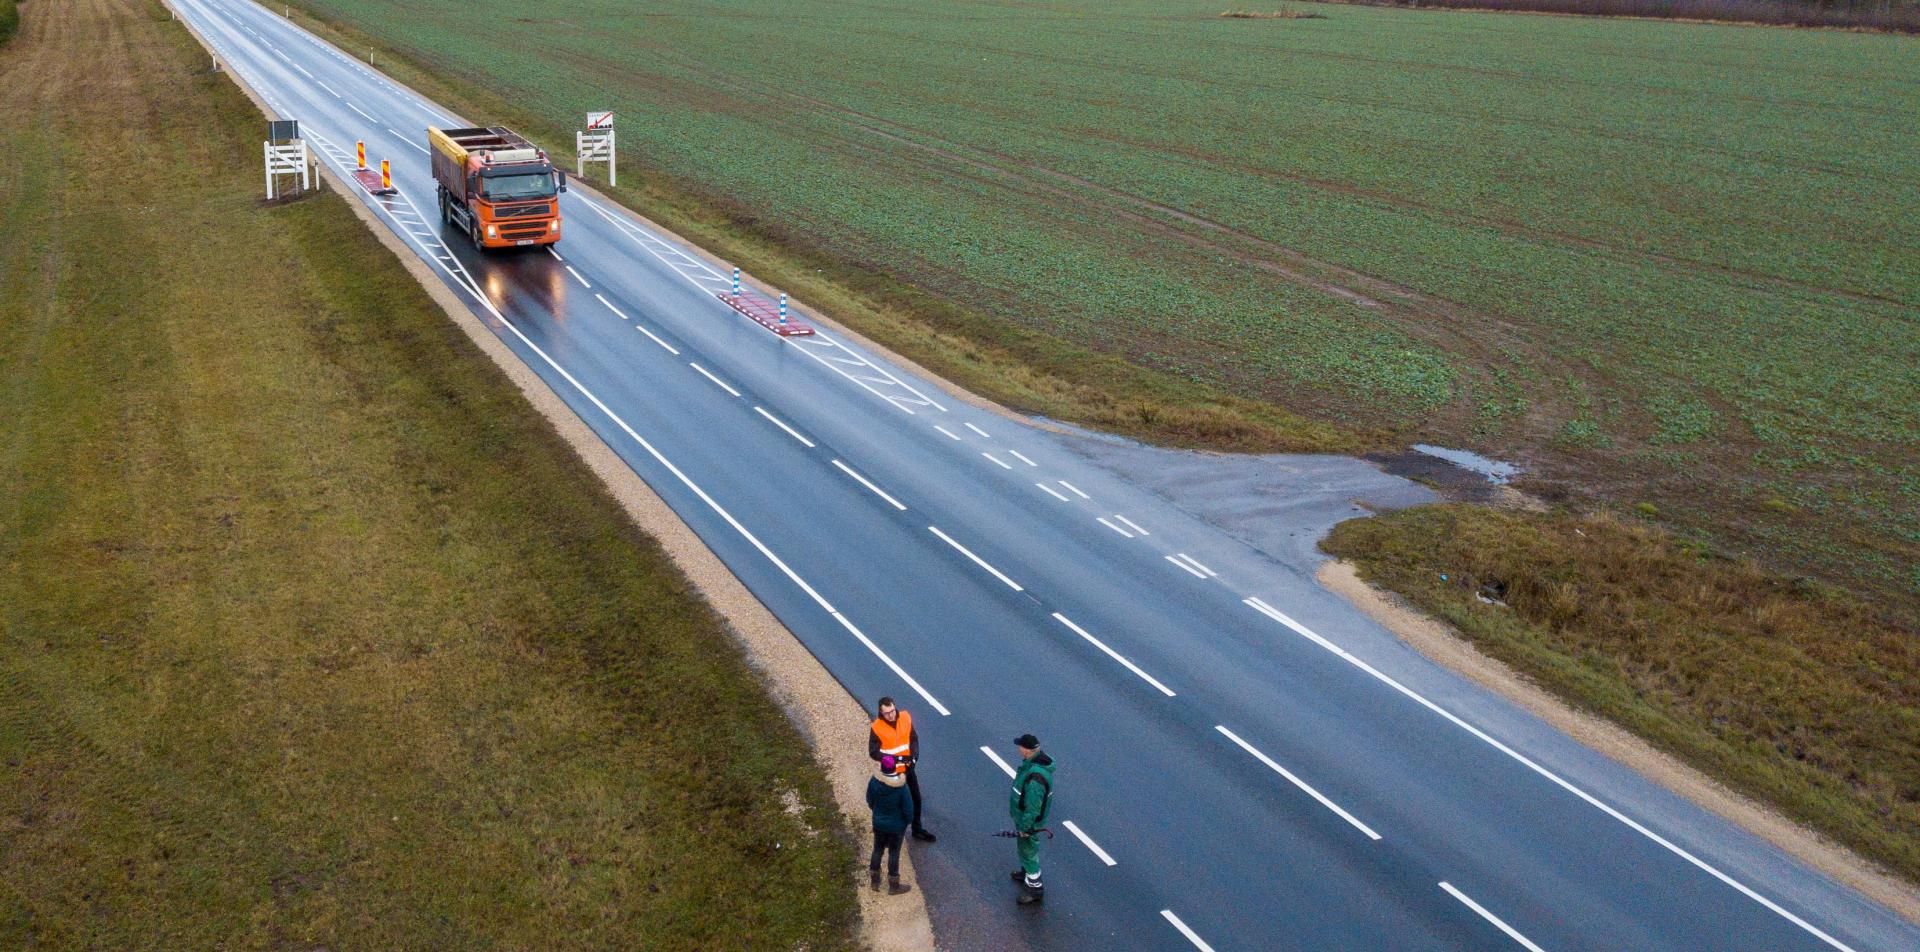 Дорога шоссейного типа как называется. Шоссейная дорога. Шоссейные дороги. Департамент шоссейных дорог Эстонии. Ремонт дорог в Эстонии.